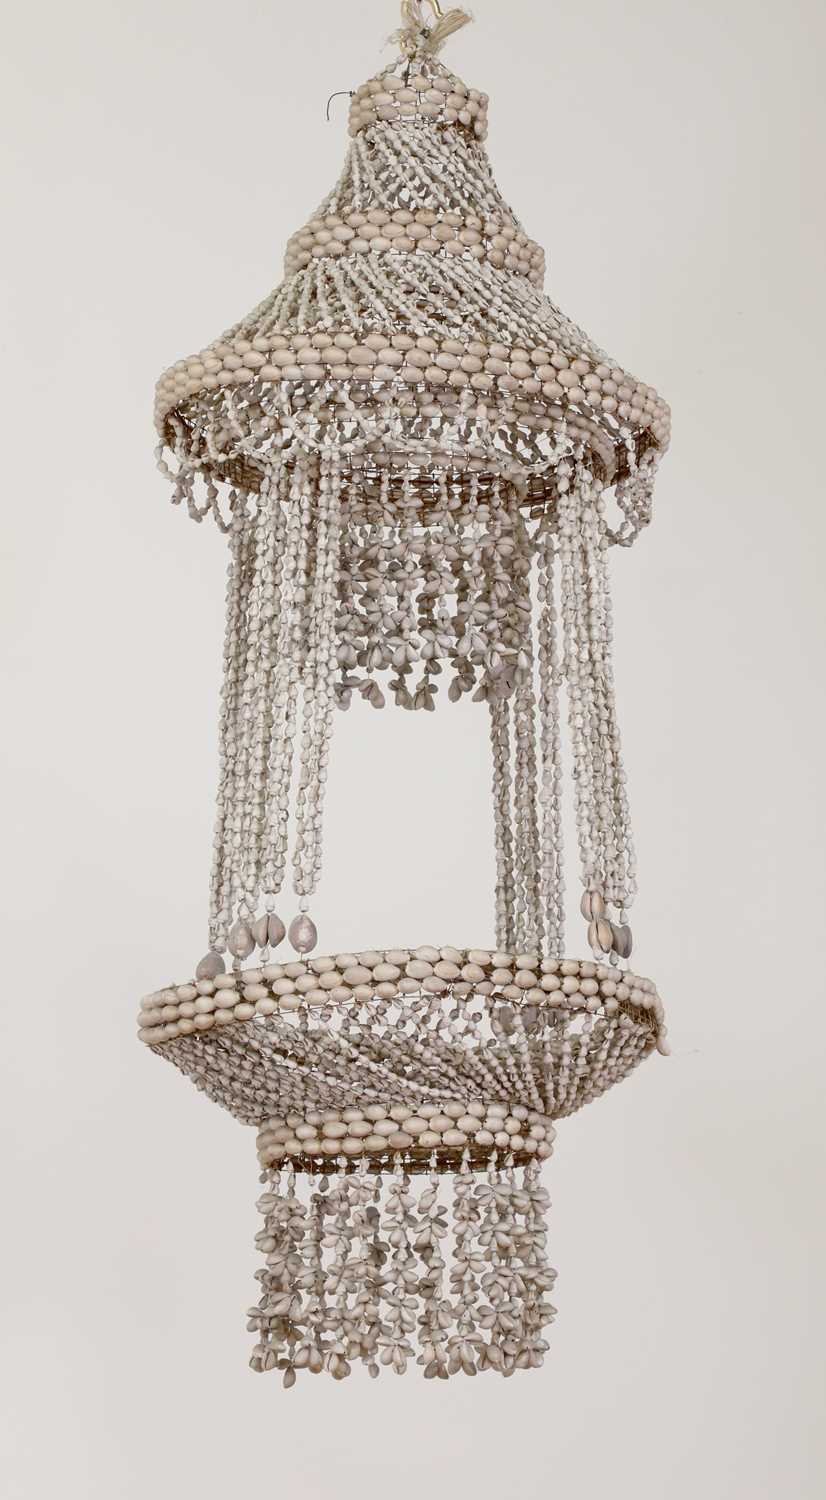 An extraordinary strung shell chandelier,